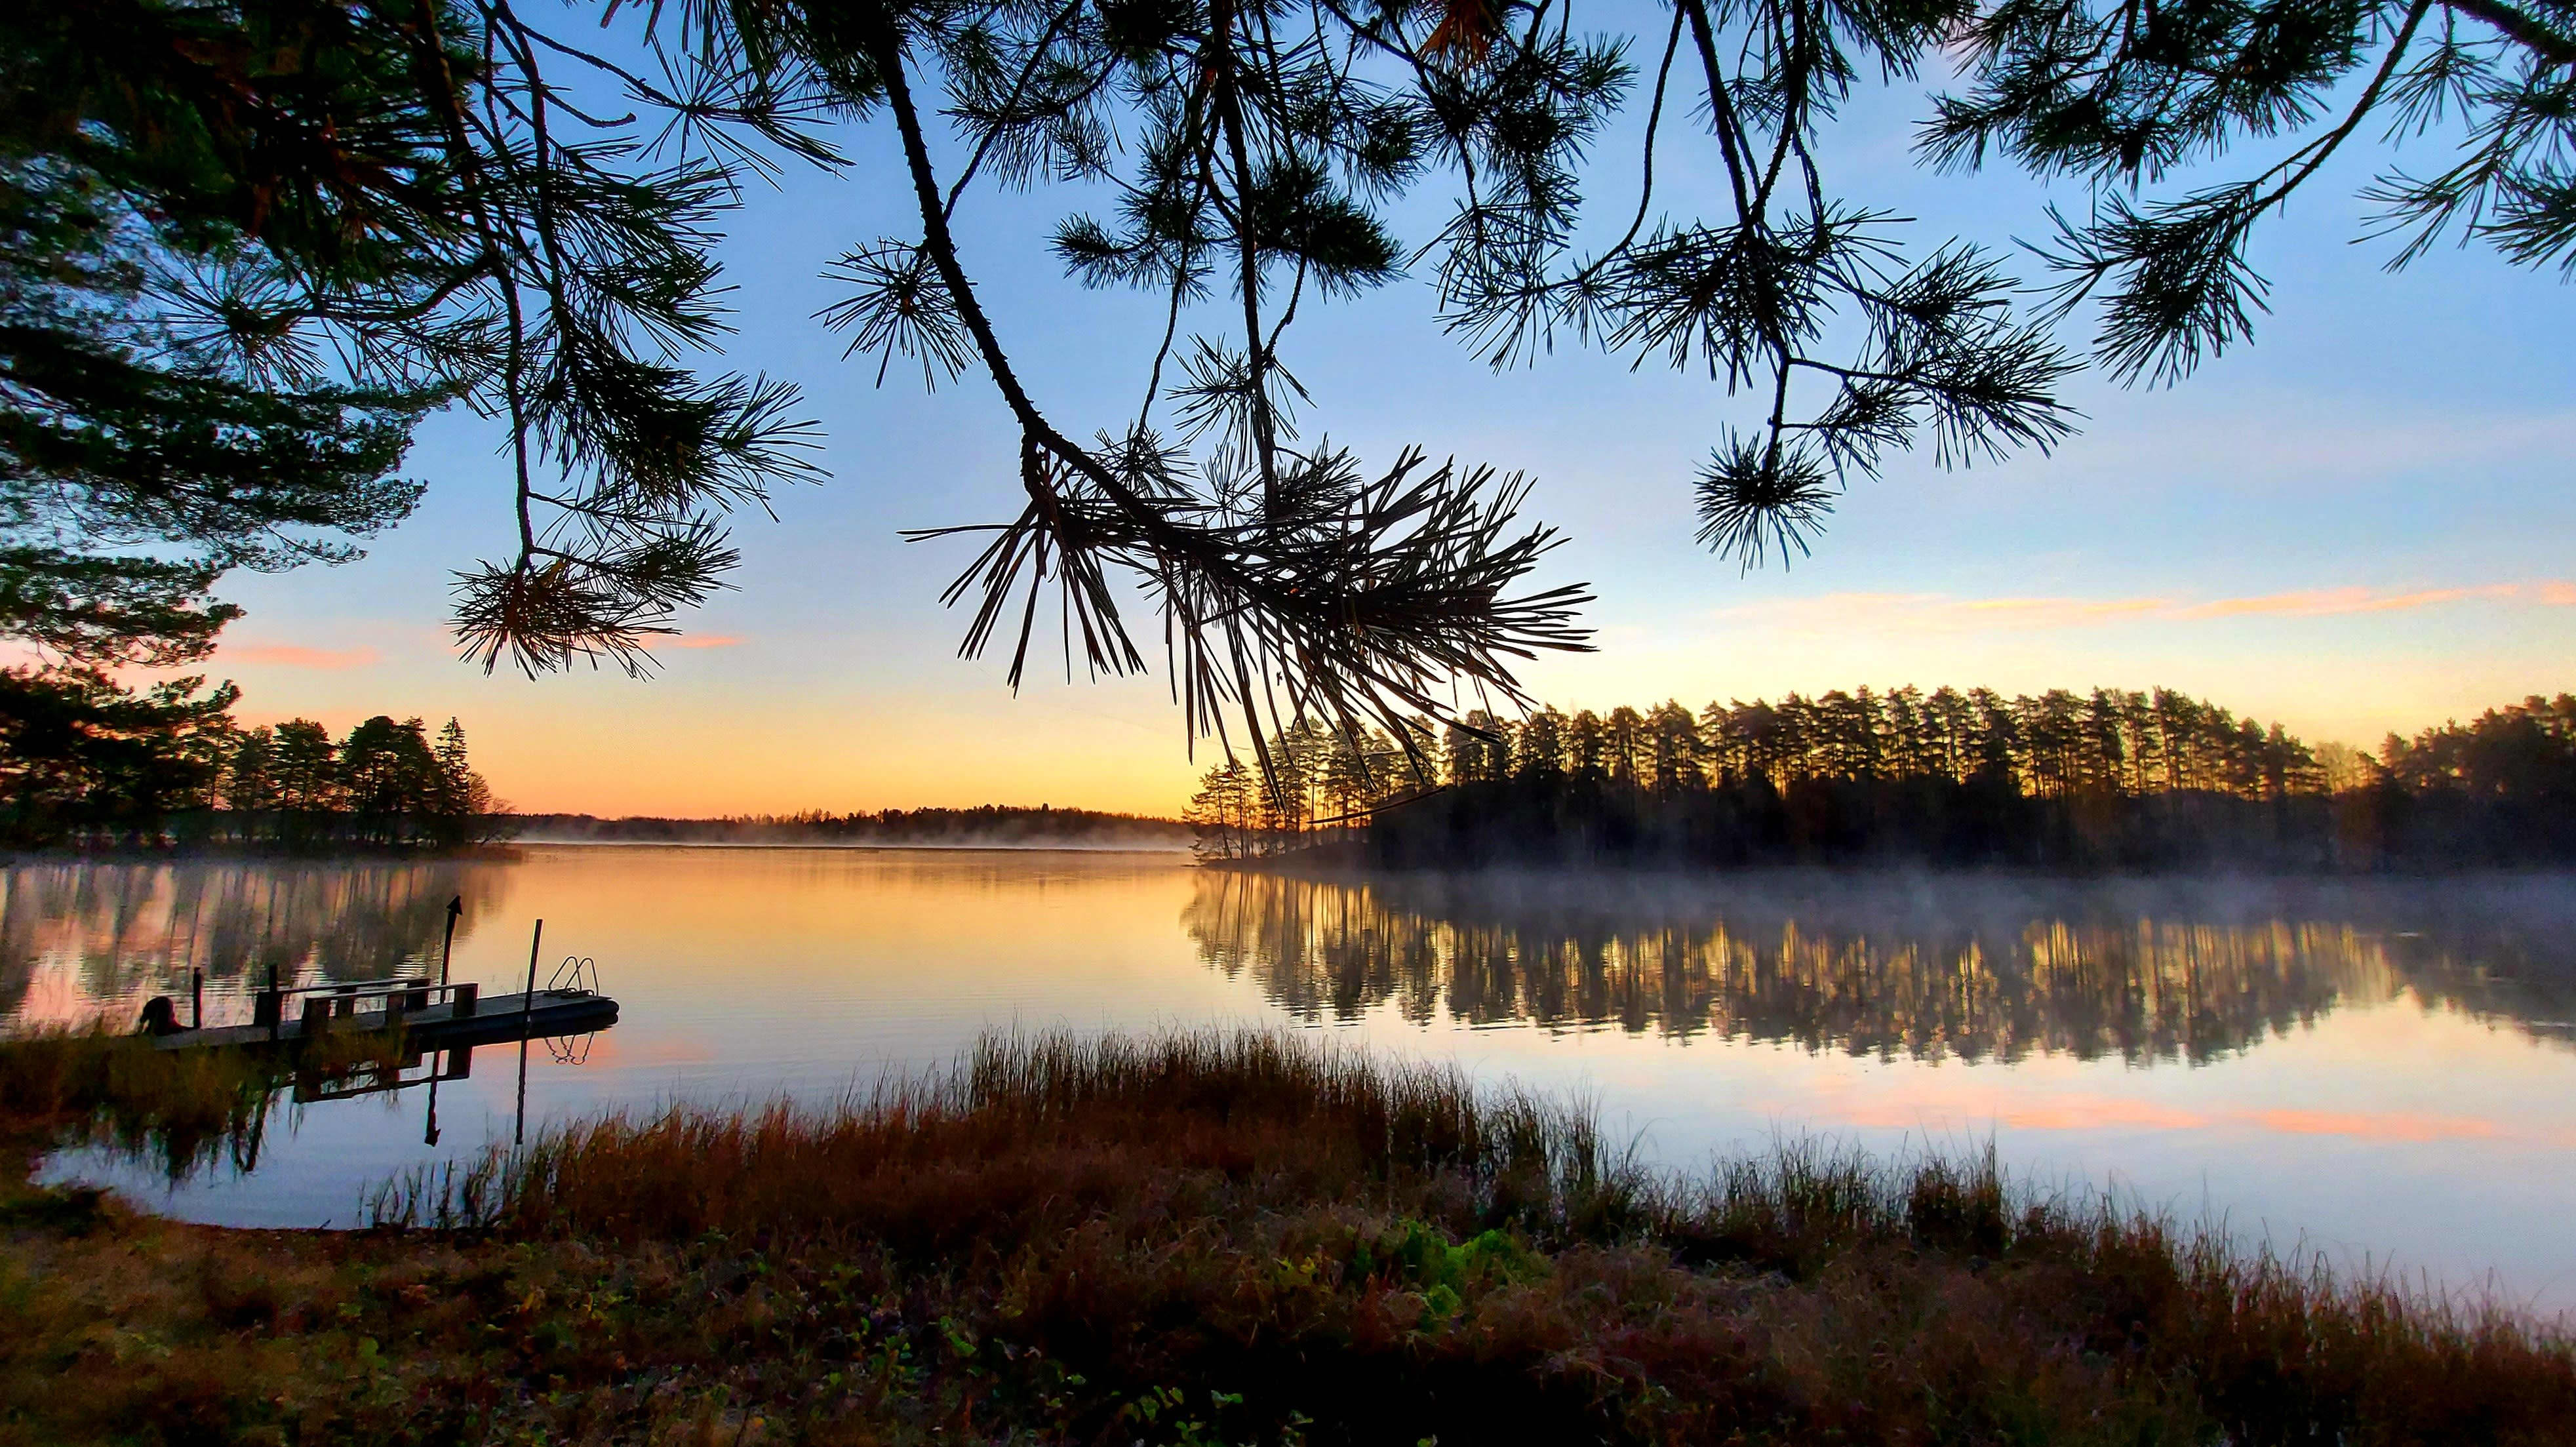 Lokakuinen auringonnousu tyynellä järvellä, jonka pinnalla on hieman usvaa. Kuvan etualalla on rantaa ja männynoksia.